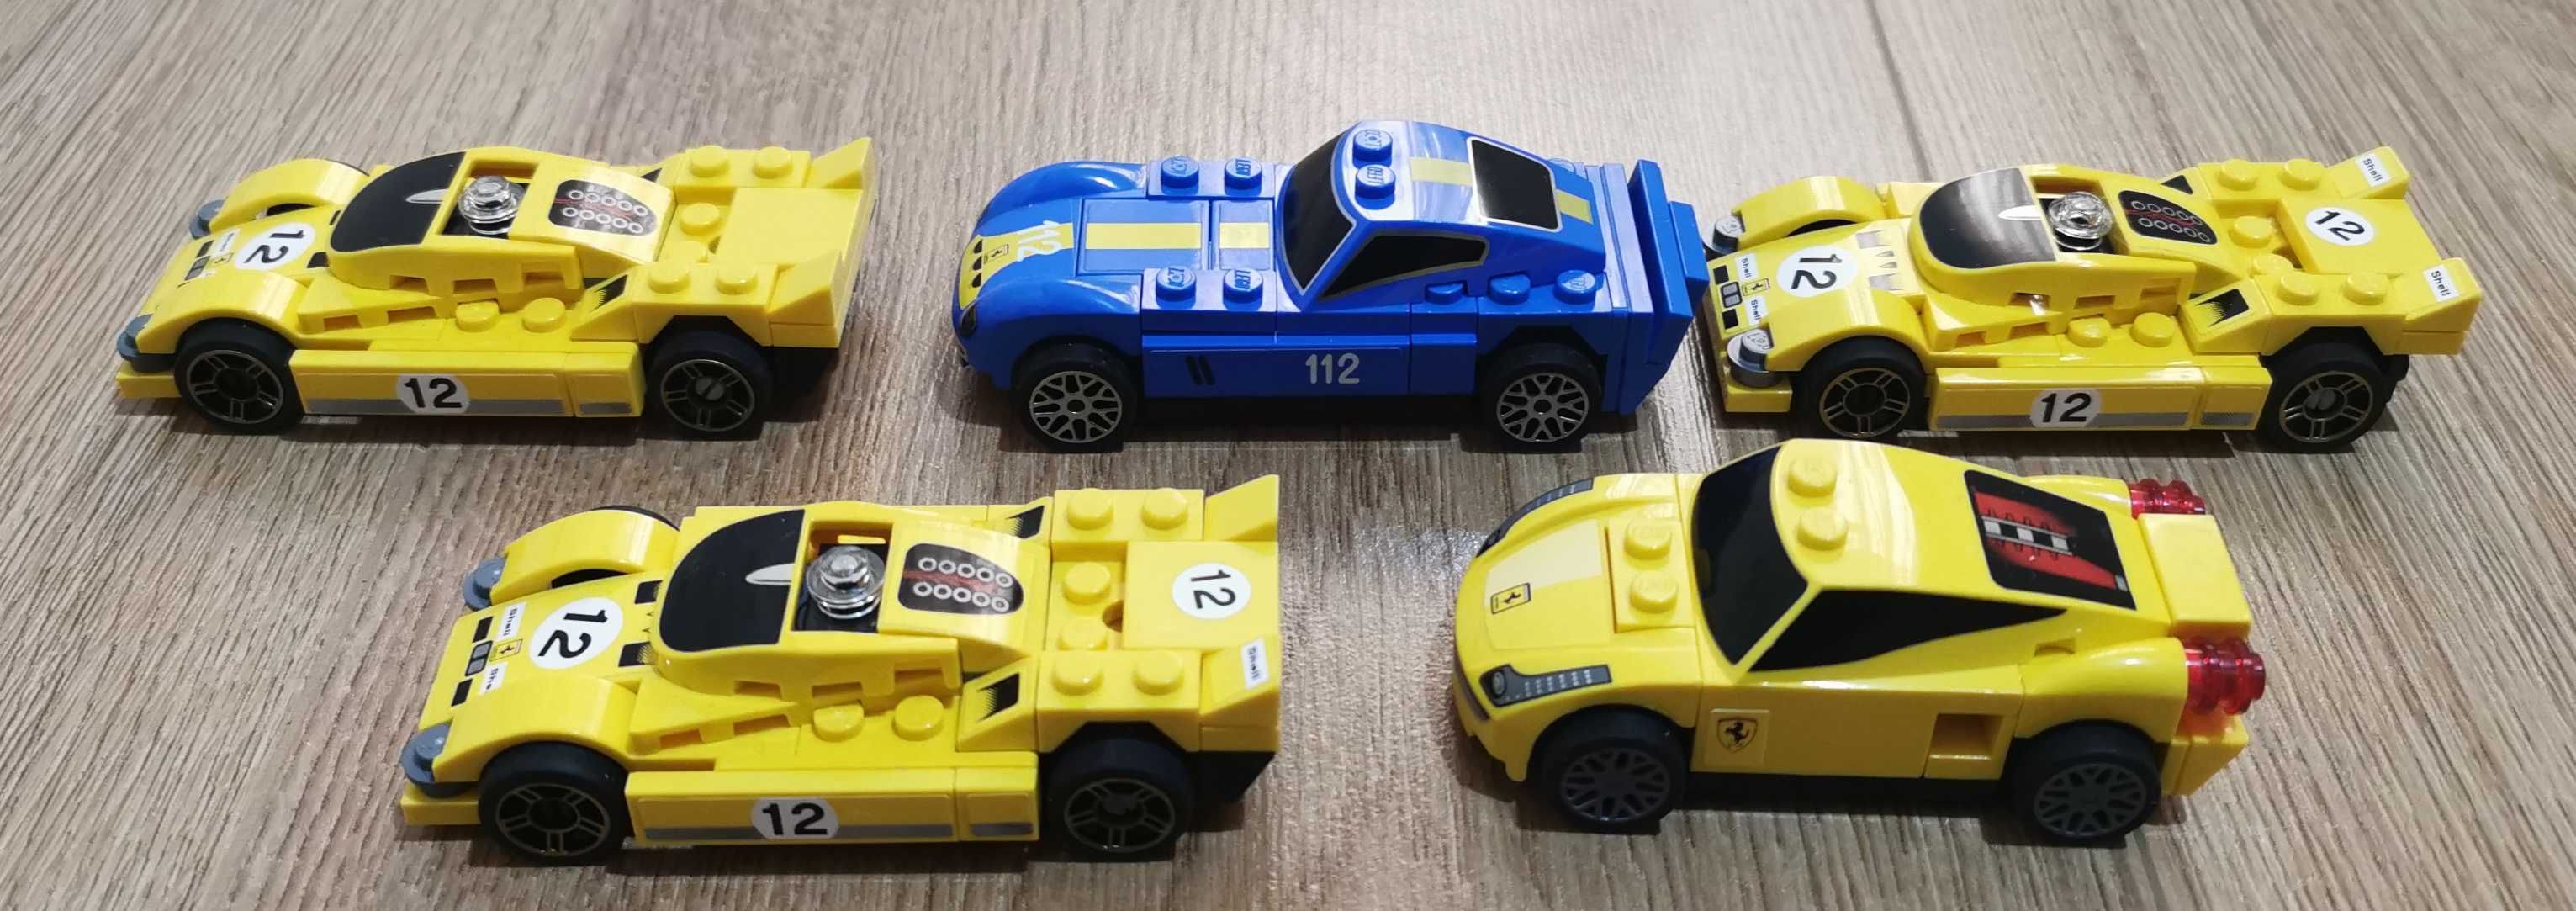 Vand Lego Ferrari Shell 512s Longtail, 458 Italia, 250 GTO